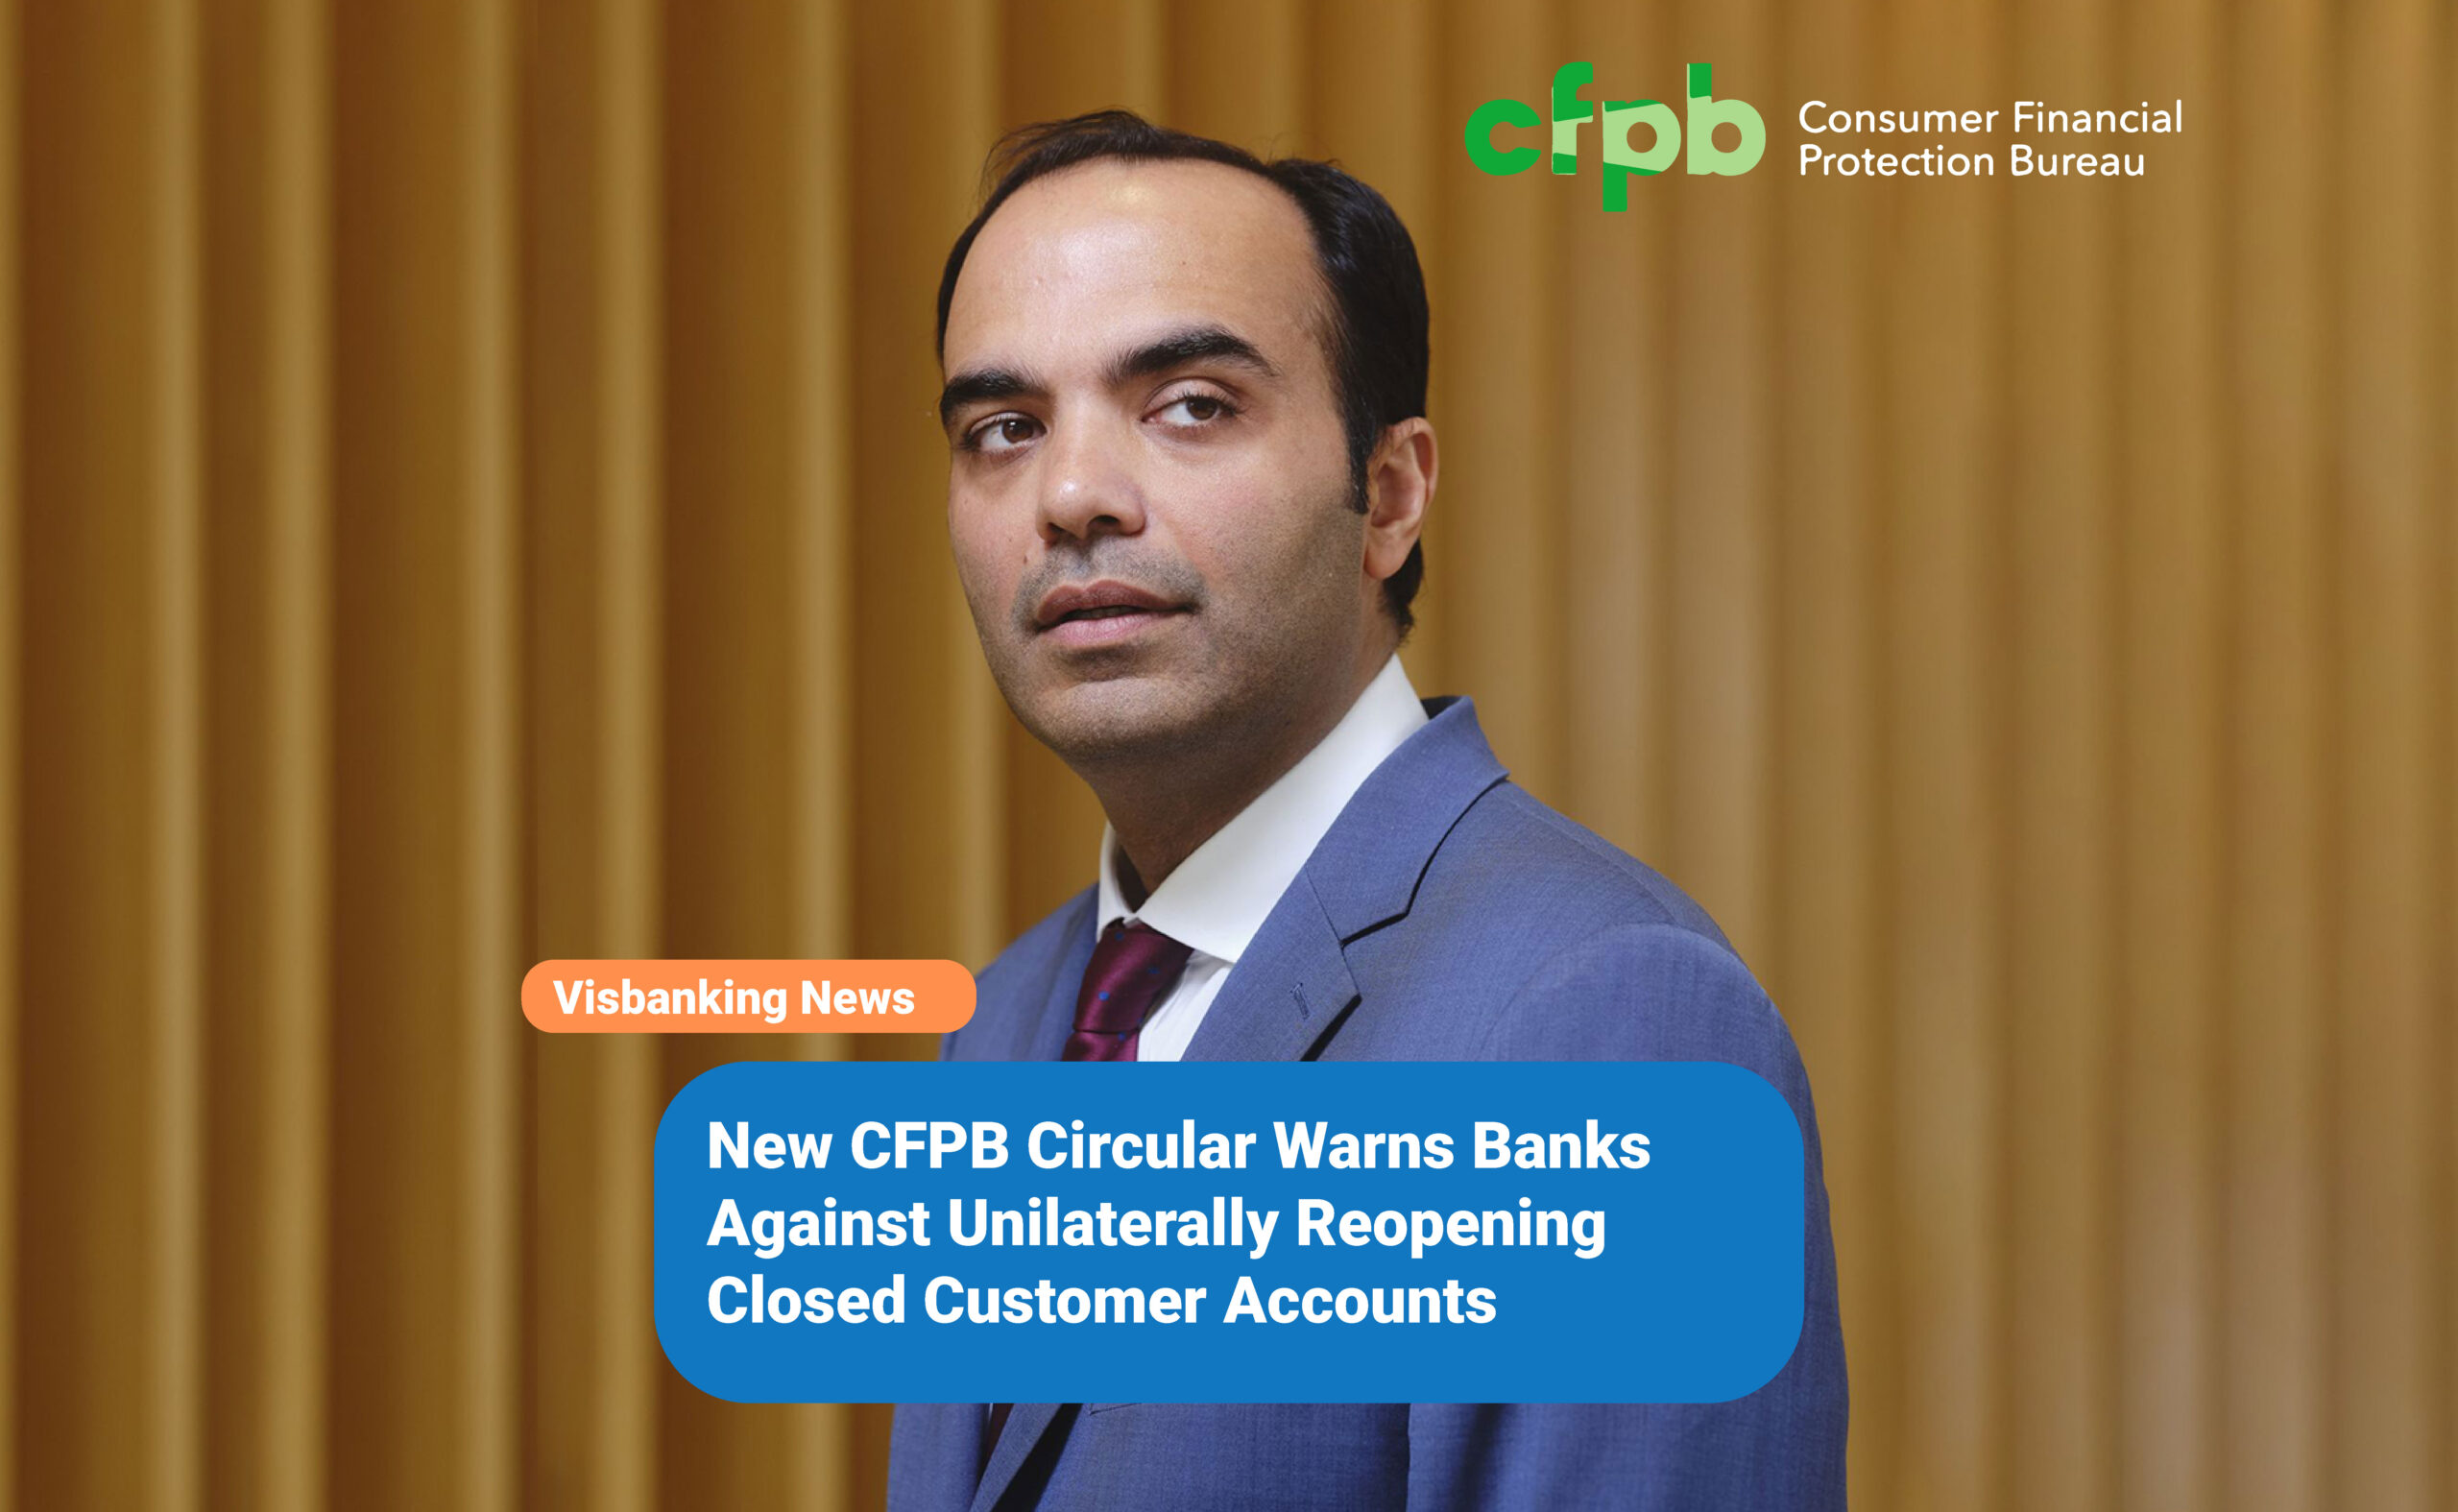 New CFPB Circular Warns Banks Against Unilaterally Reopening Closed Customer Accounts